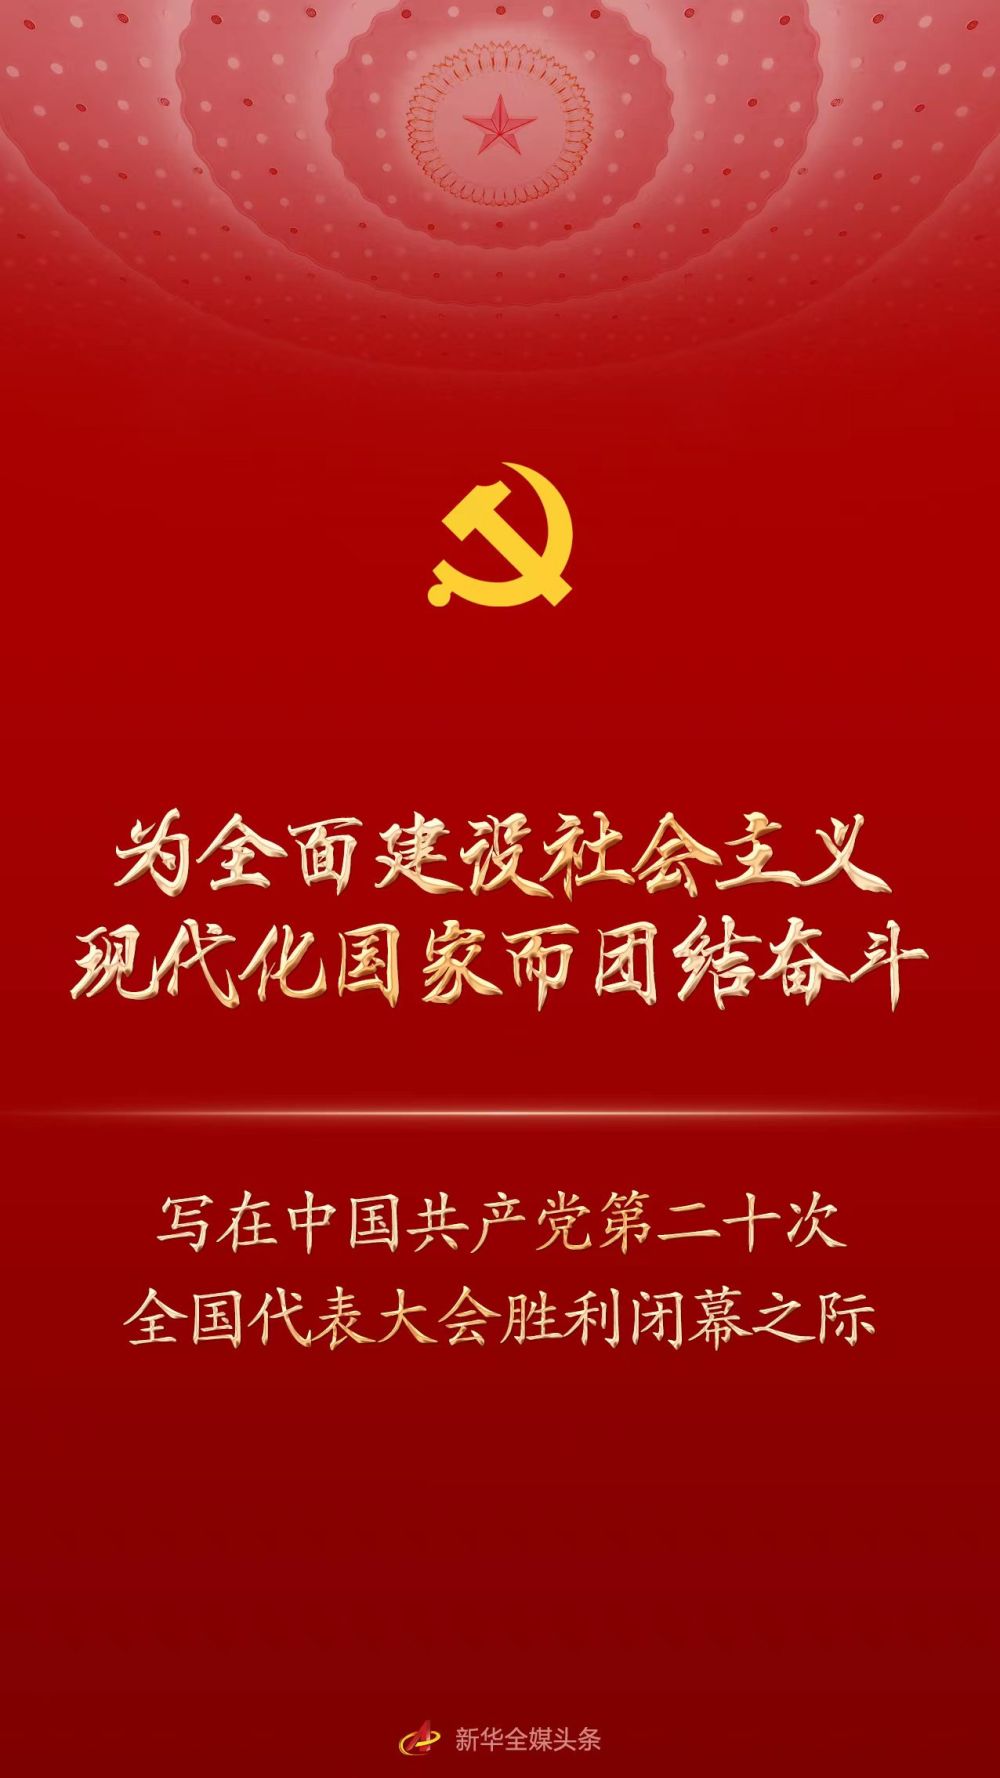 为全面建设社会主义现代化国家而团结奋斗——写在中国共产党第二十次全国代表大会胜利闭幕之际-泛亚电竞